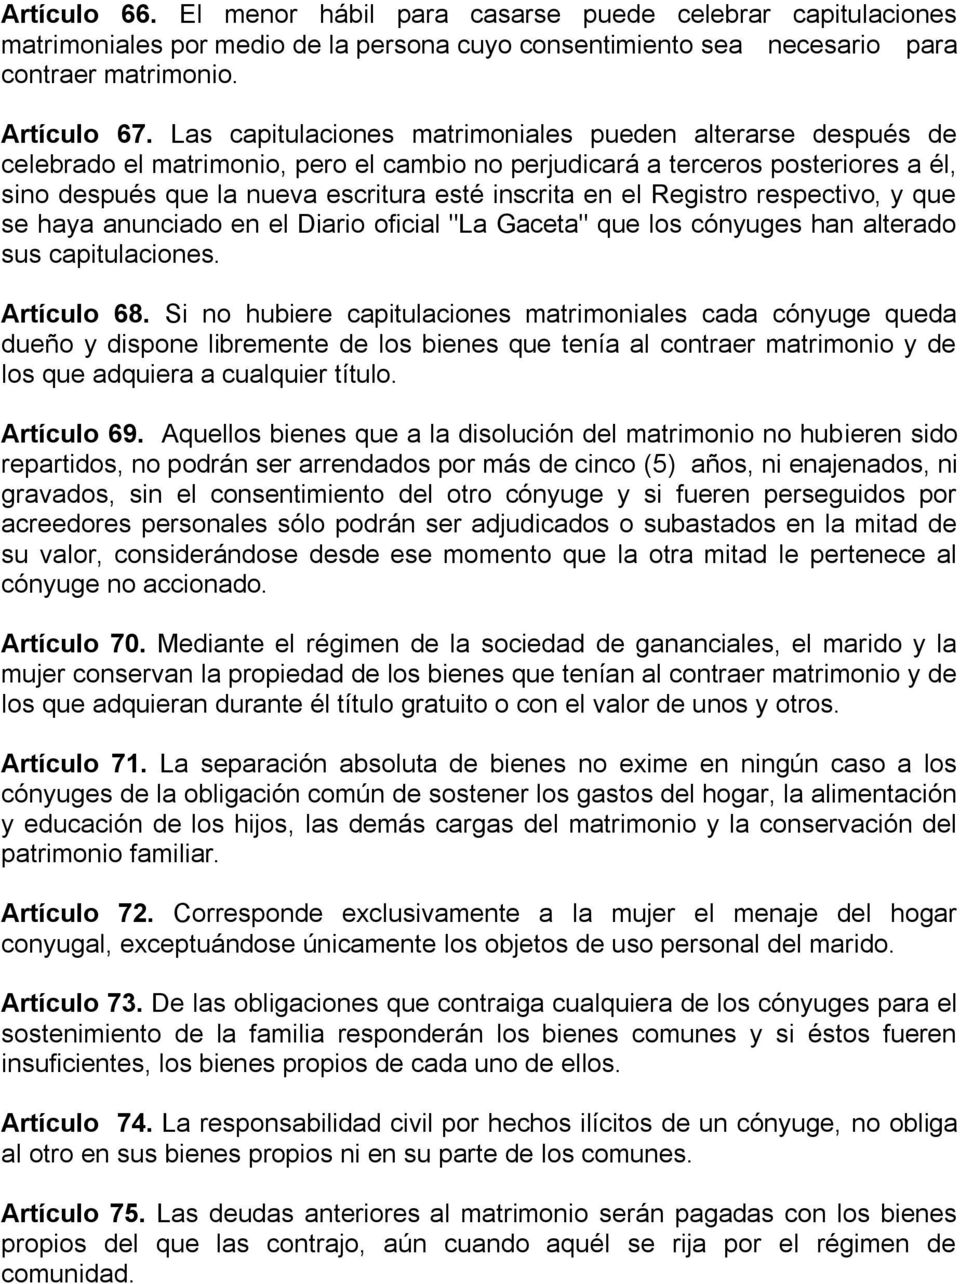 el Registro respectivo, y que se haya anunciado en el Diario oficial "La Gaceta" que los cónyuges han alterado sus capitulaciones. Artículo 68.